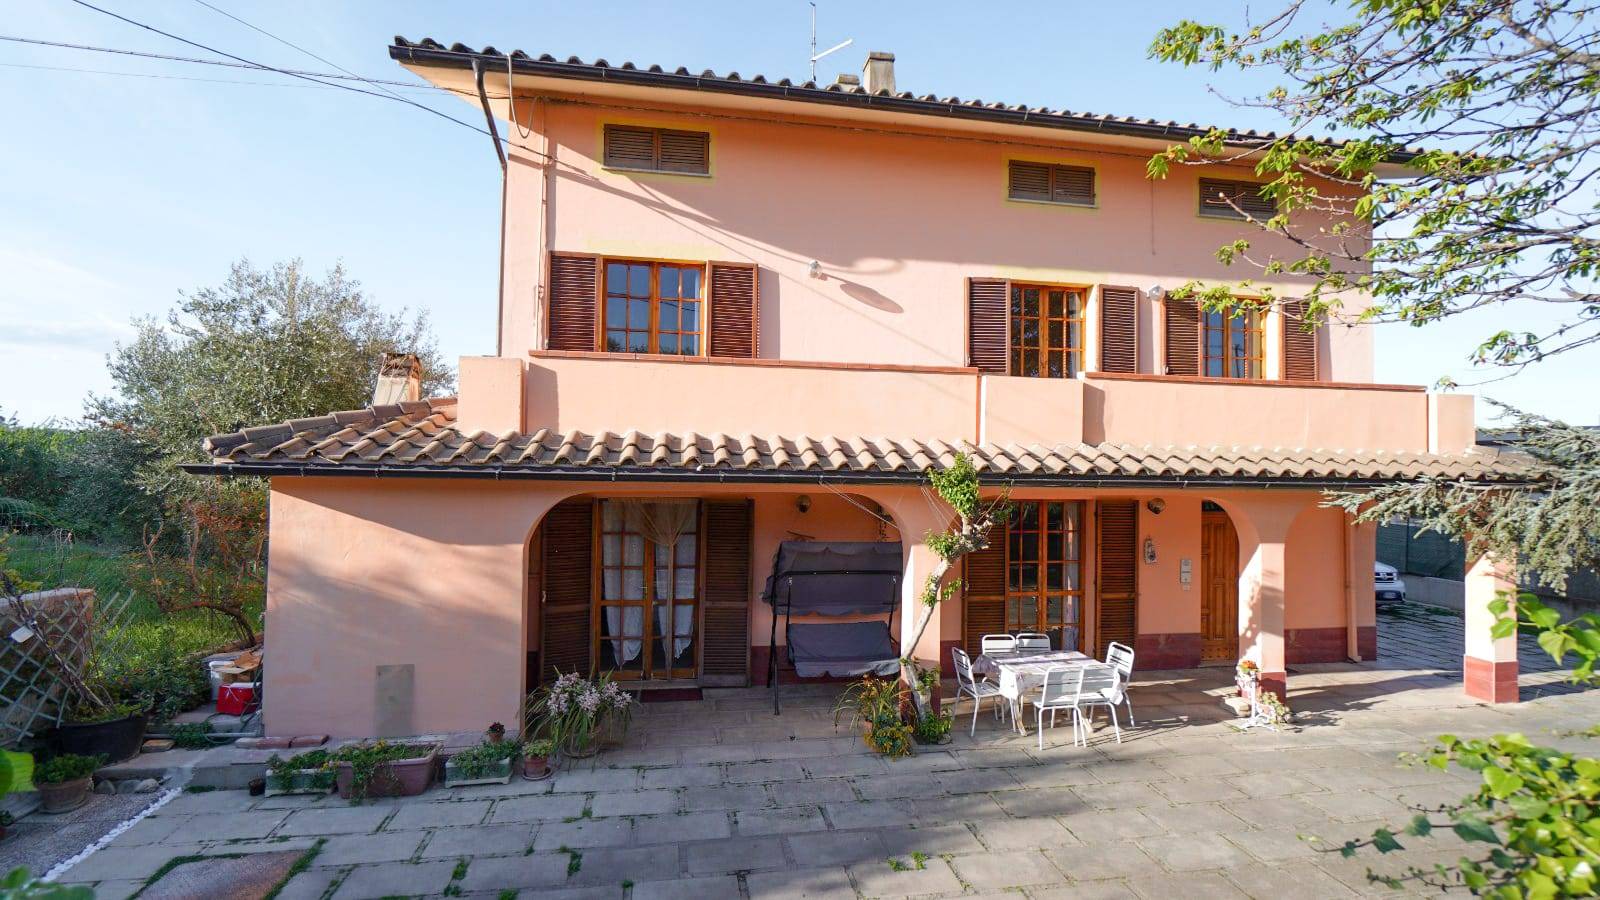 Villa Bifamiliare in vendita a Mosciano Sant'Angelo, 3 locali, prezzo € 270.000 | PortaleAgenzieImmobiliari.it